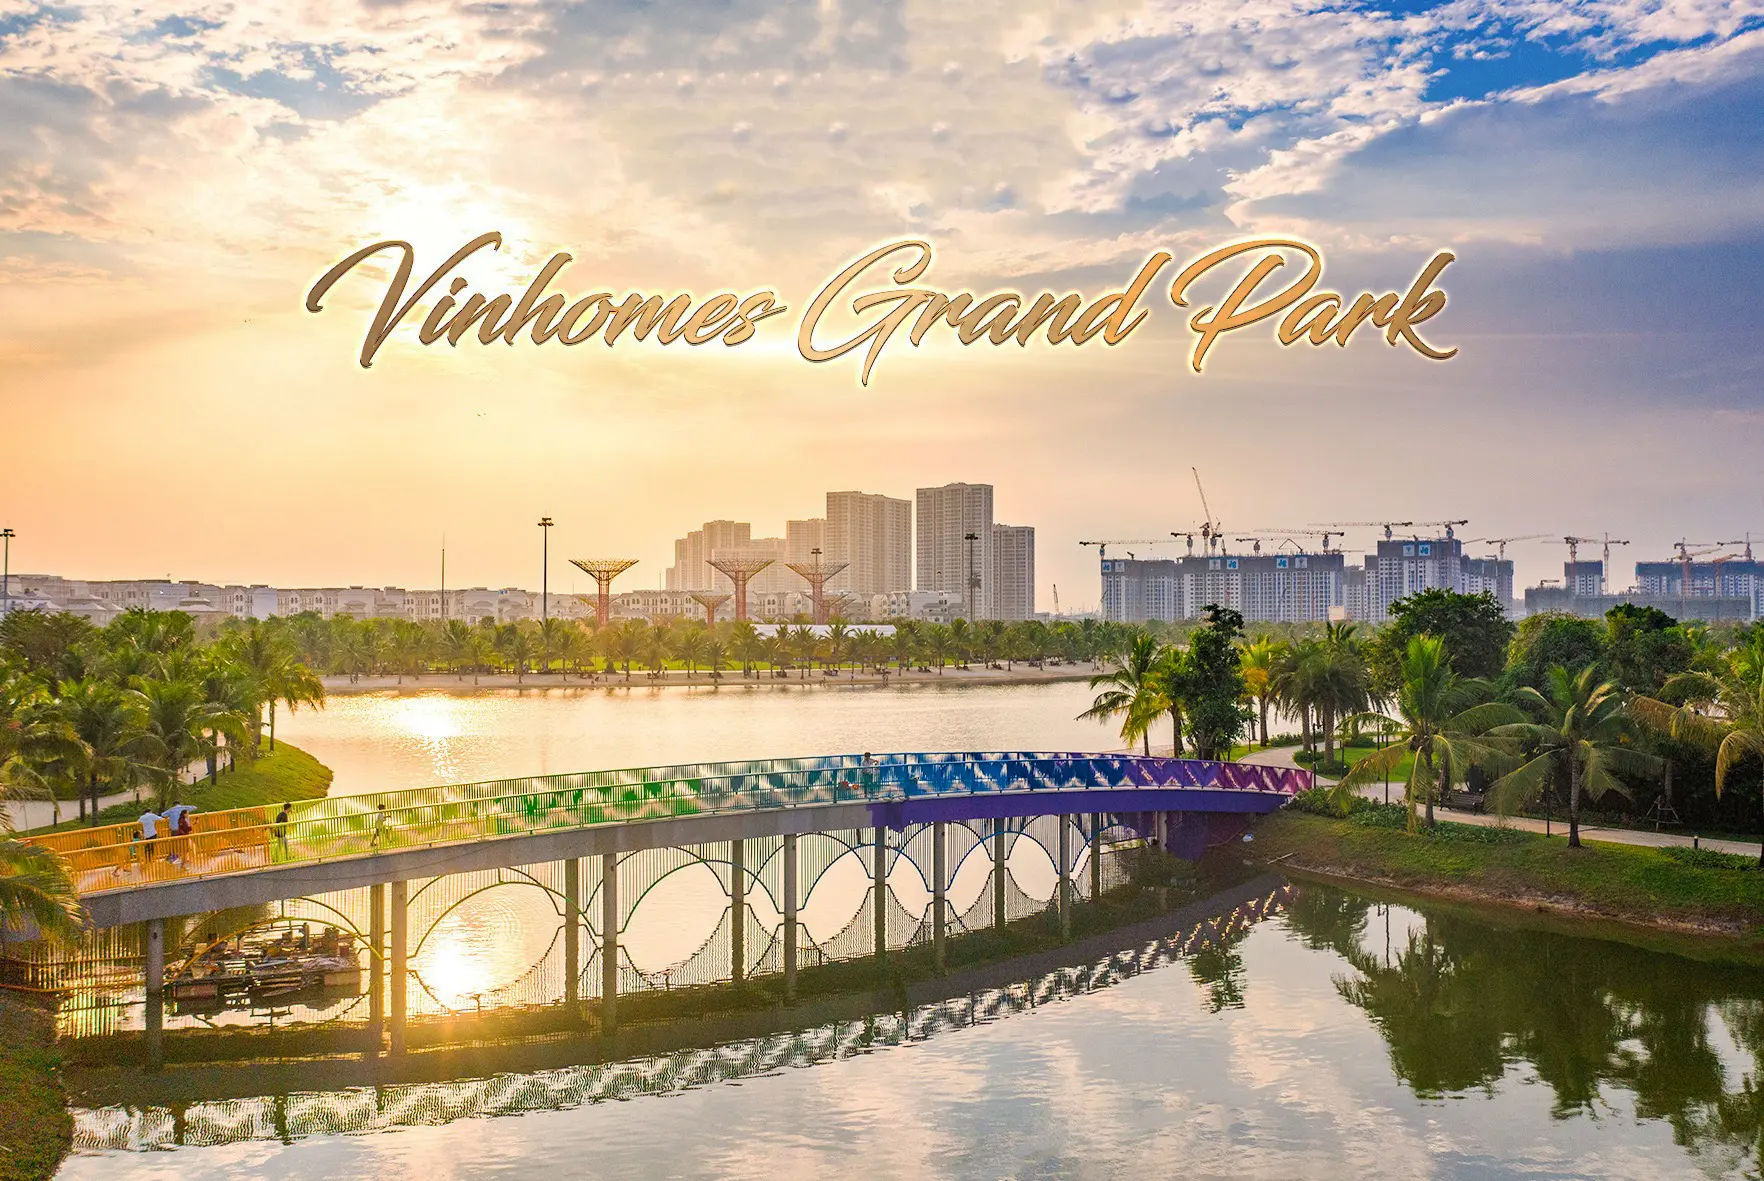 Cập nhật tiến độ xây dựng Vinhomes Grand Park tháng 04/2021